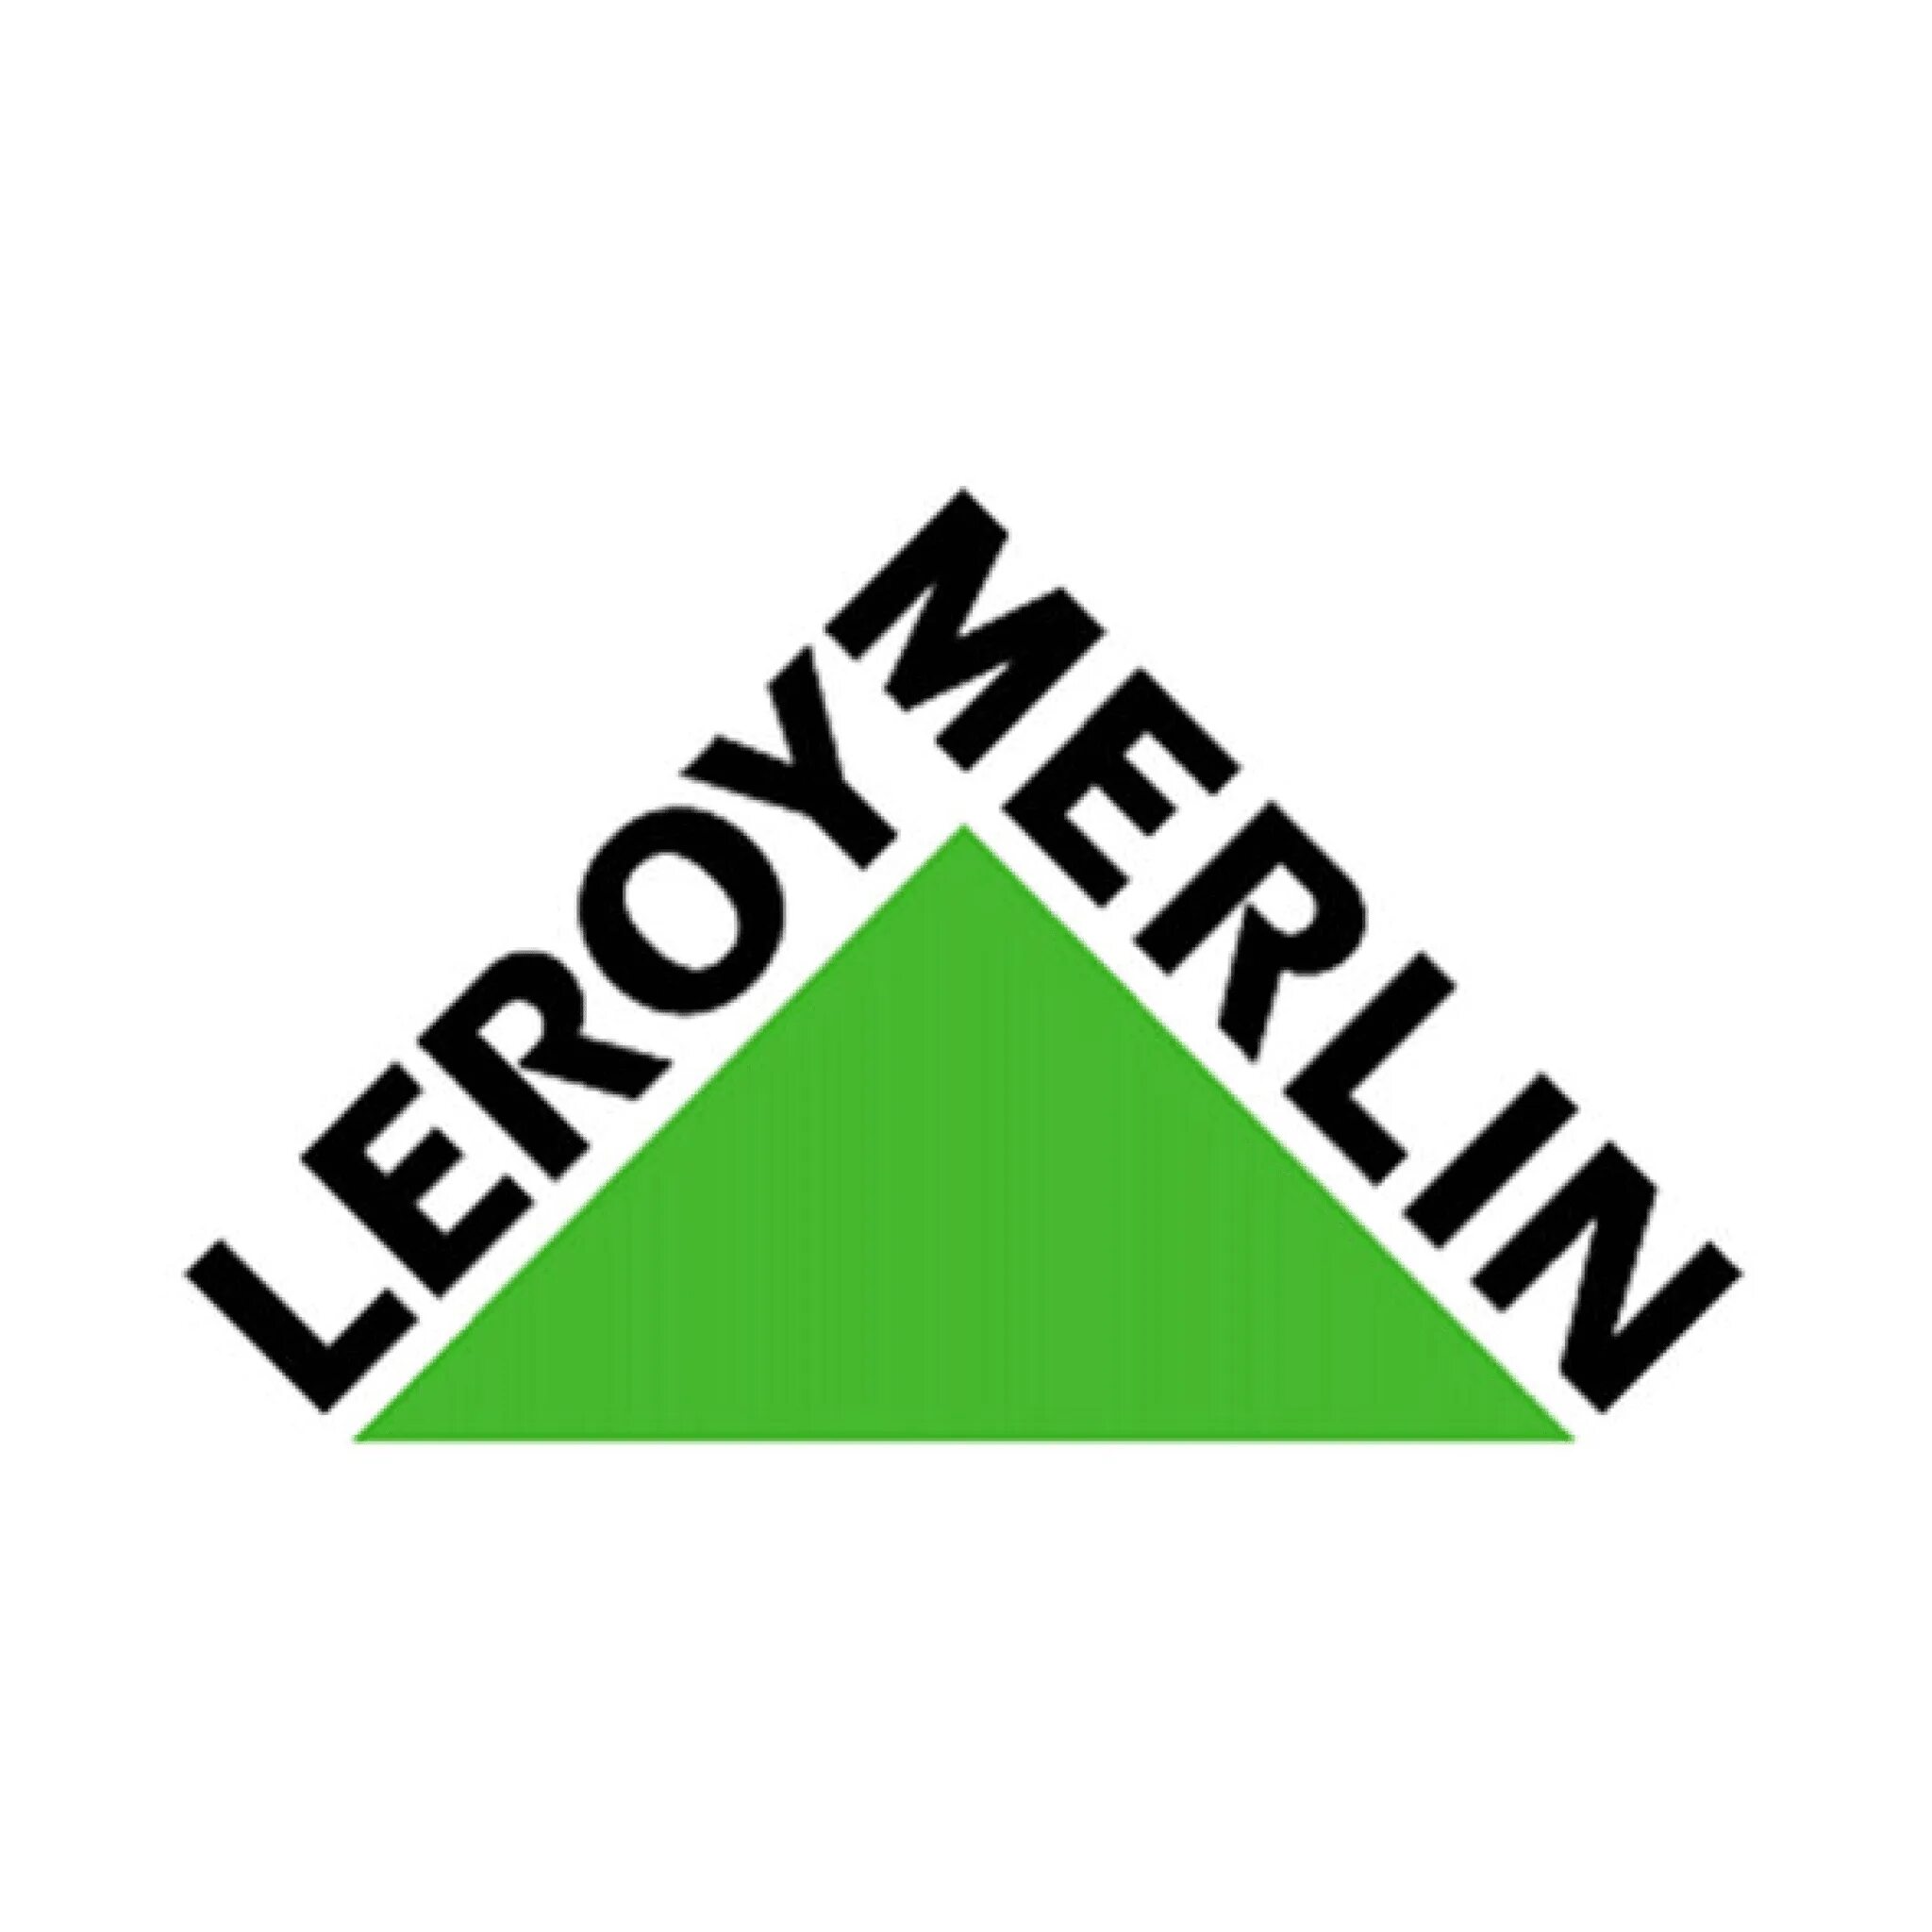 Леруа Мерлен логотип. Леруа Мерлен логотип PNG. Expedition Леруа. Леруа мерлен ростов на дону телефон